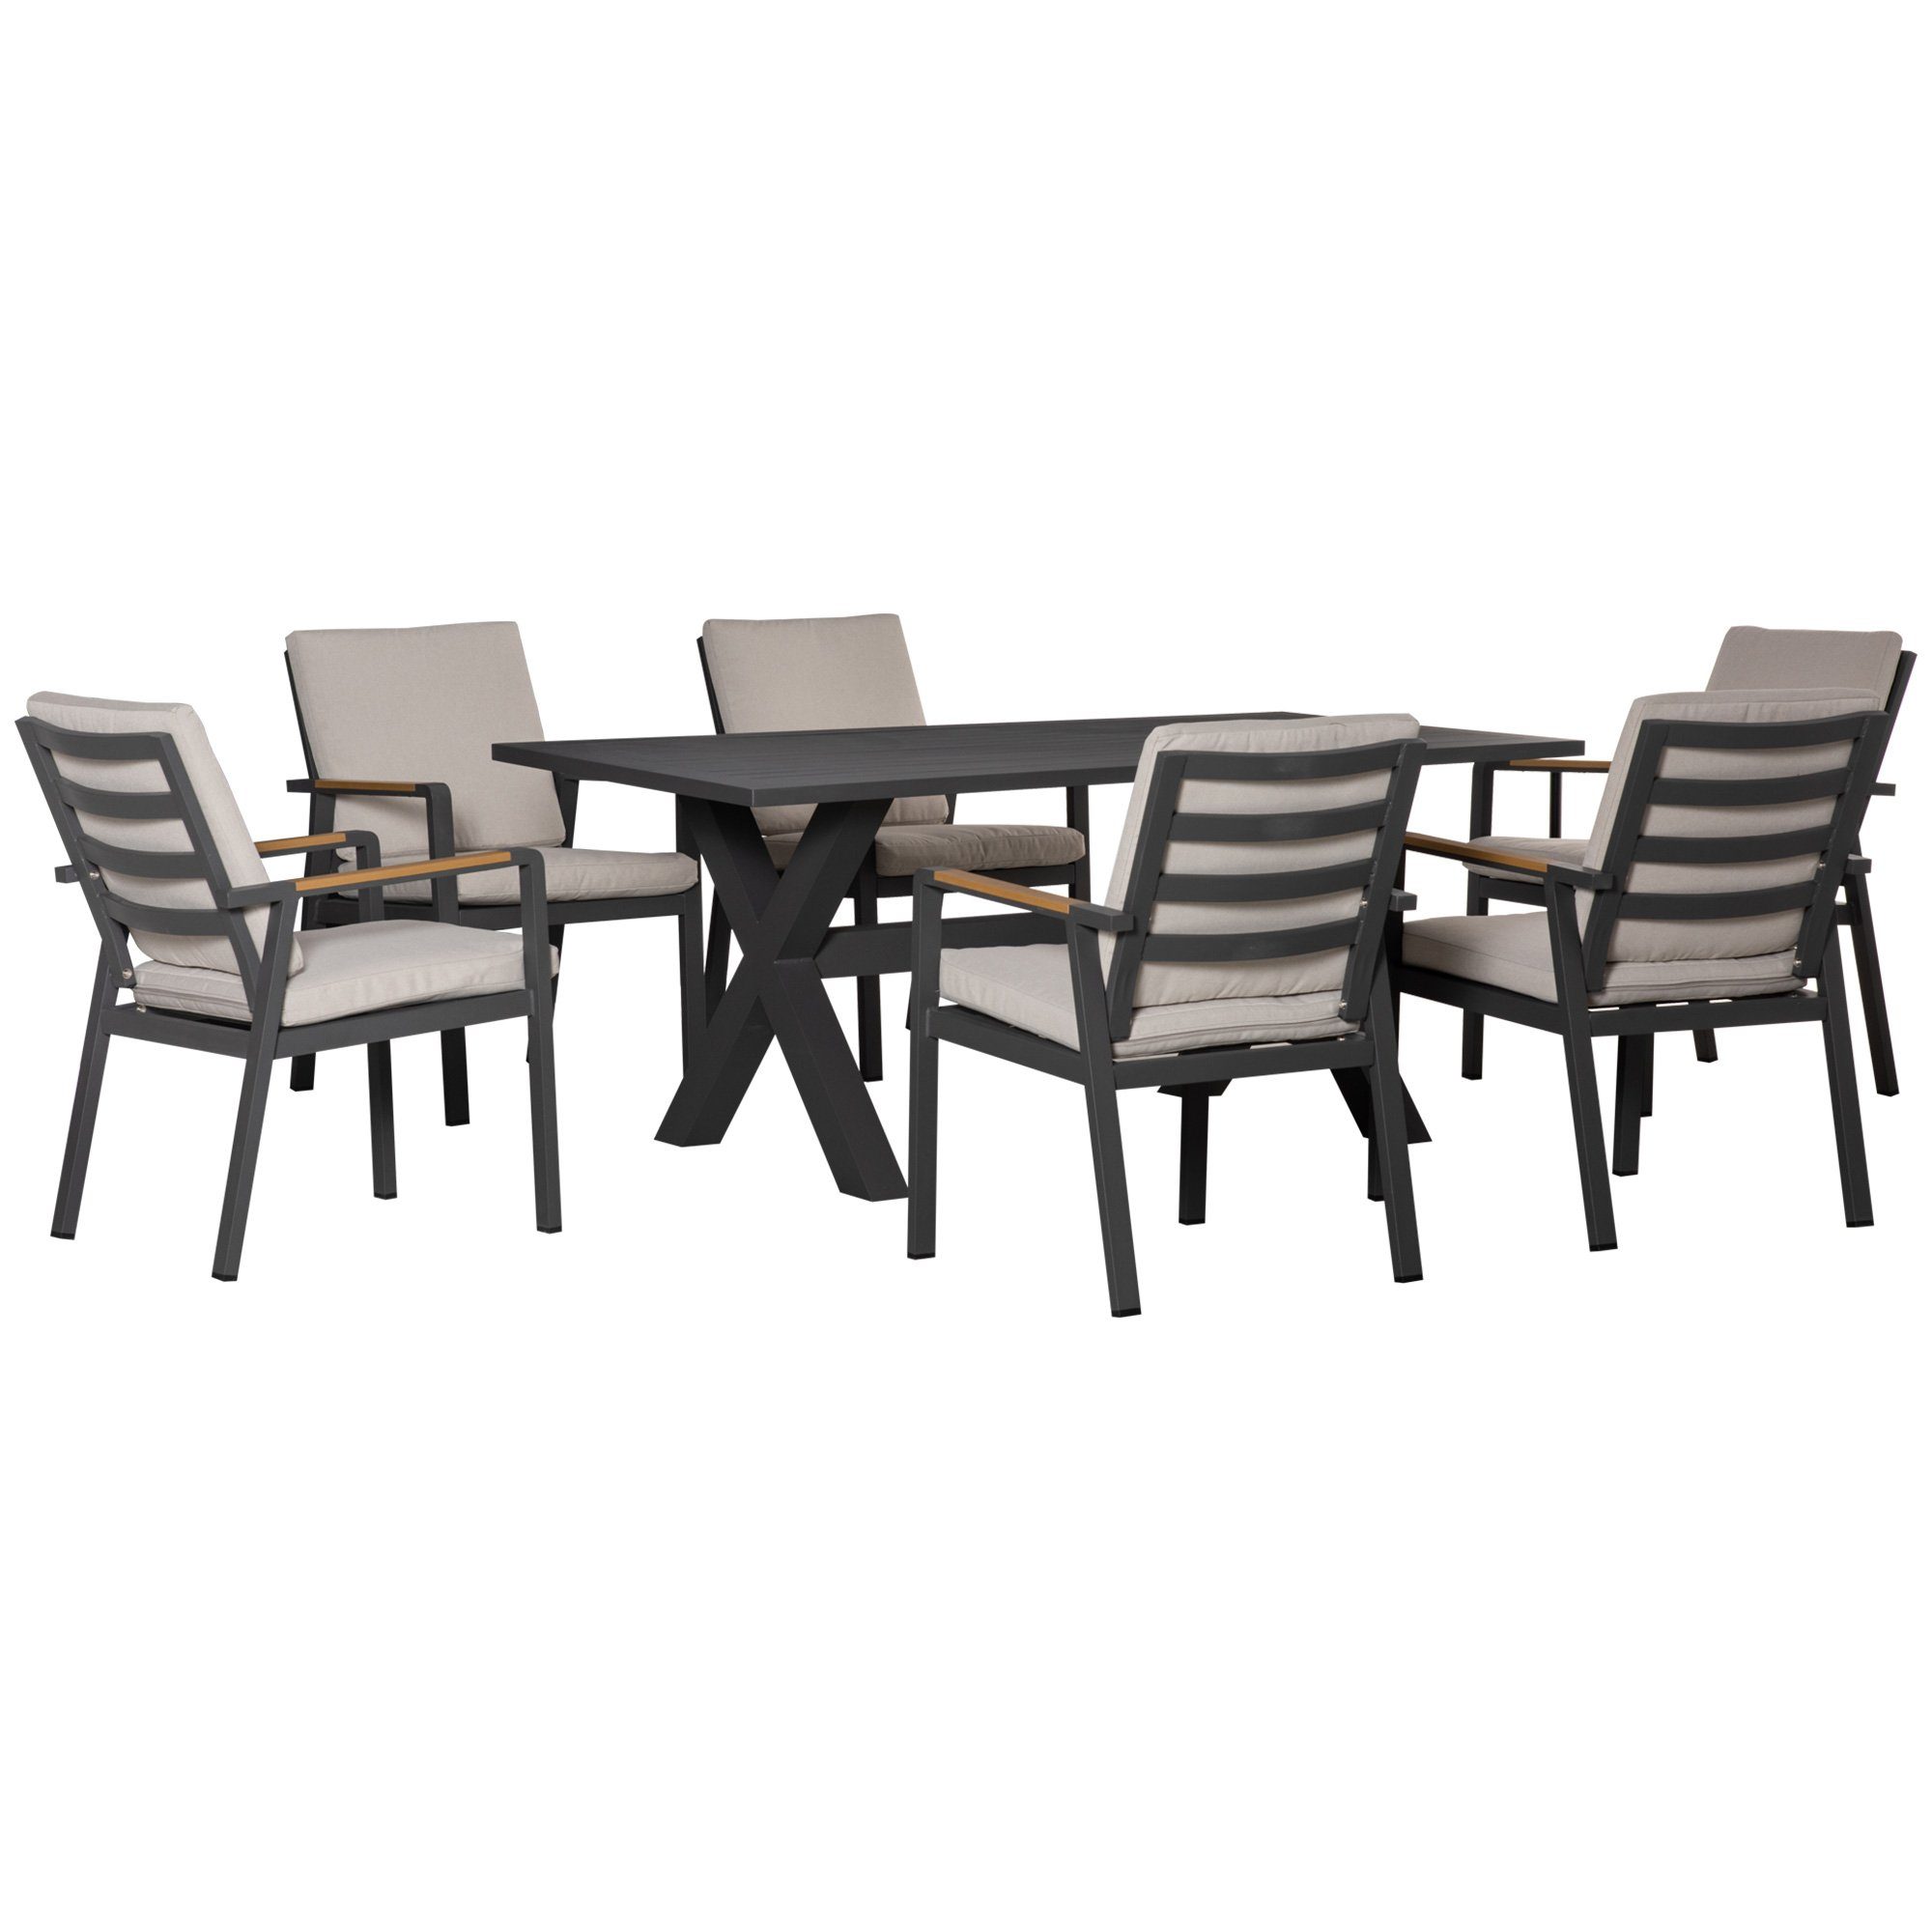 Stühle, wasserabweisende Sitzgruppe Outsunny Tisch, Polster, 6 7-teilig, 1 175x92,5x73cm